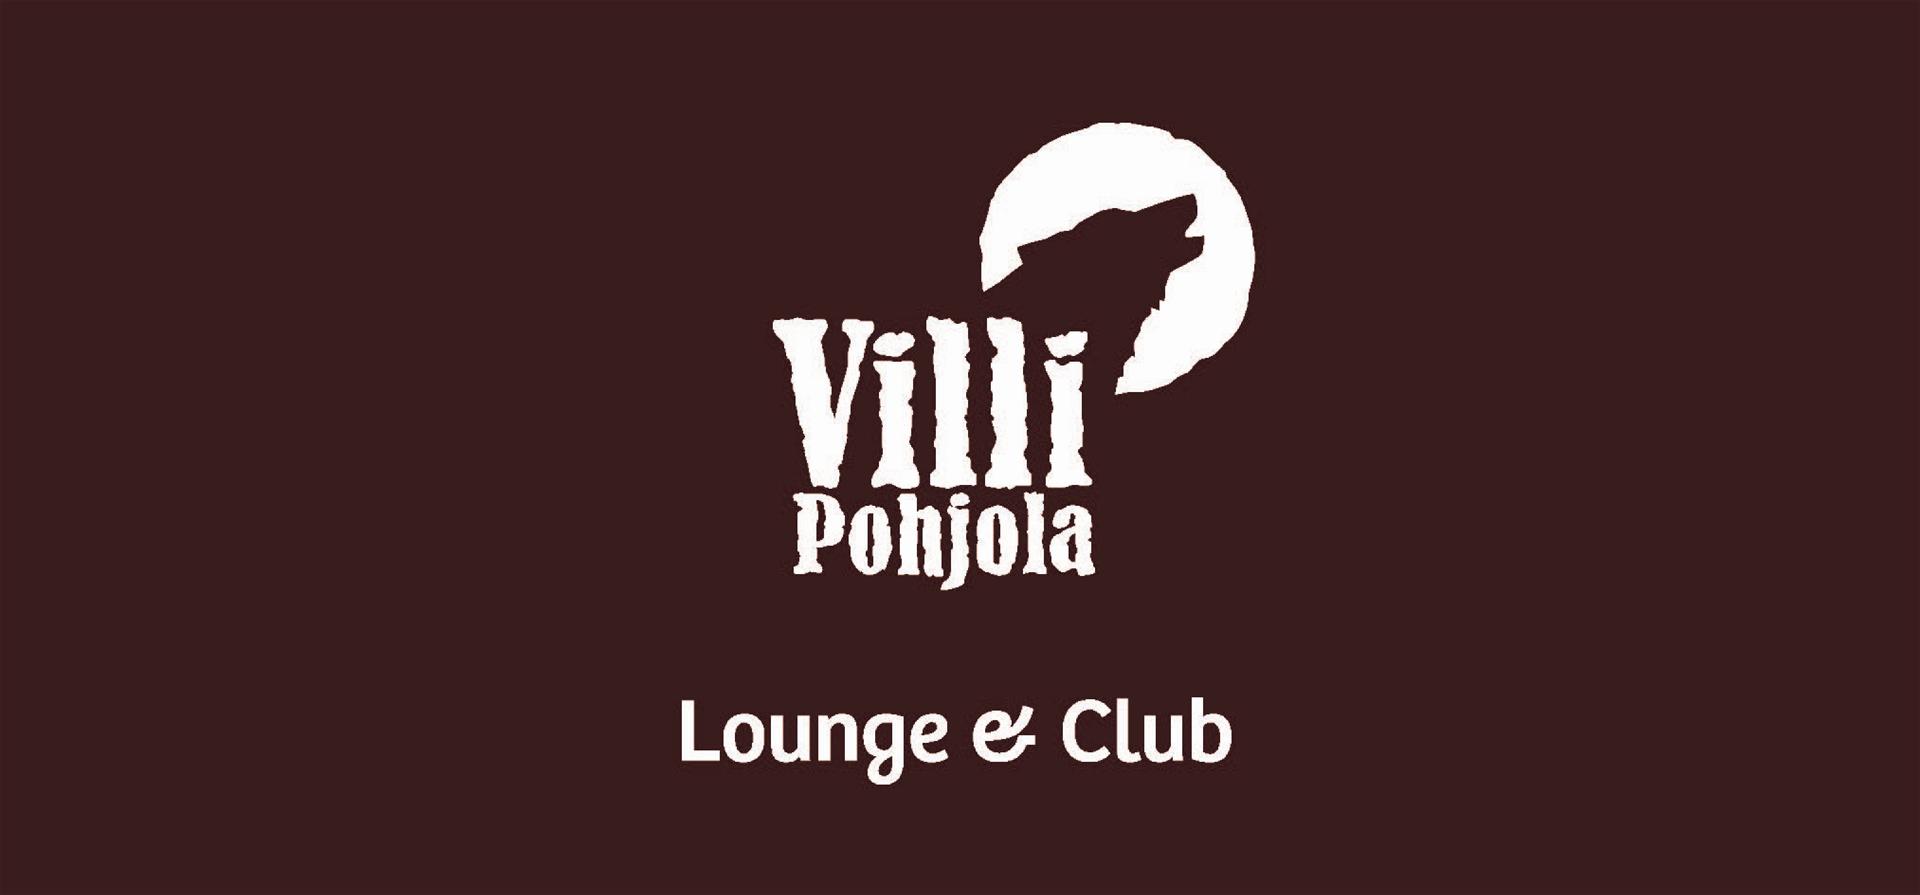 VilliPohjola_Lounge&Club_logo_posa_CMYK_sra.jpg